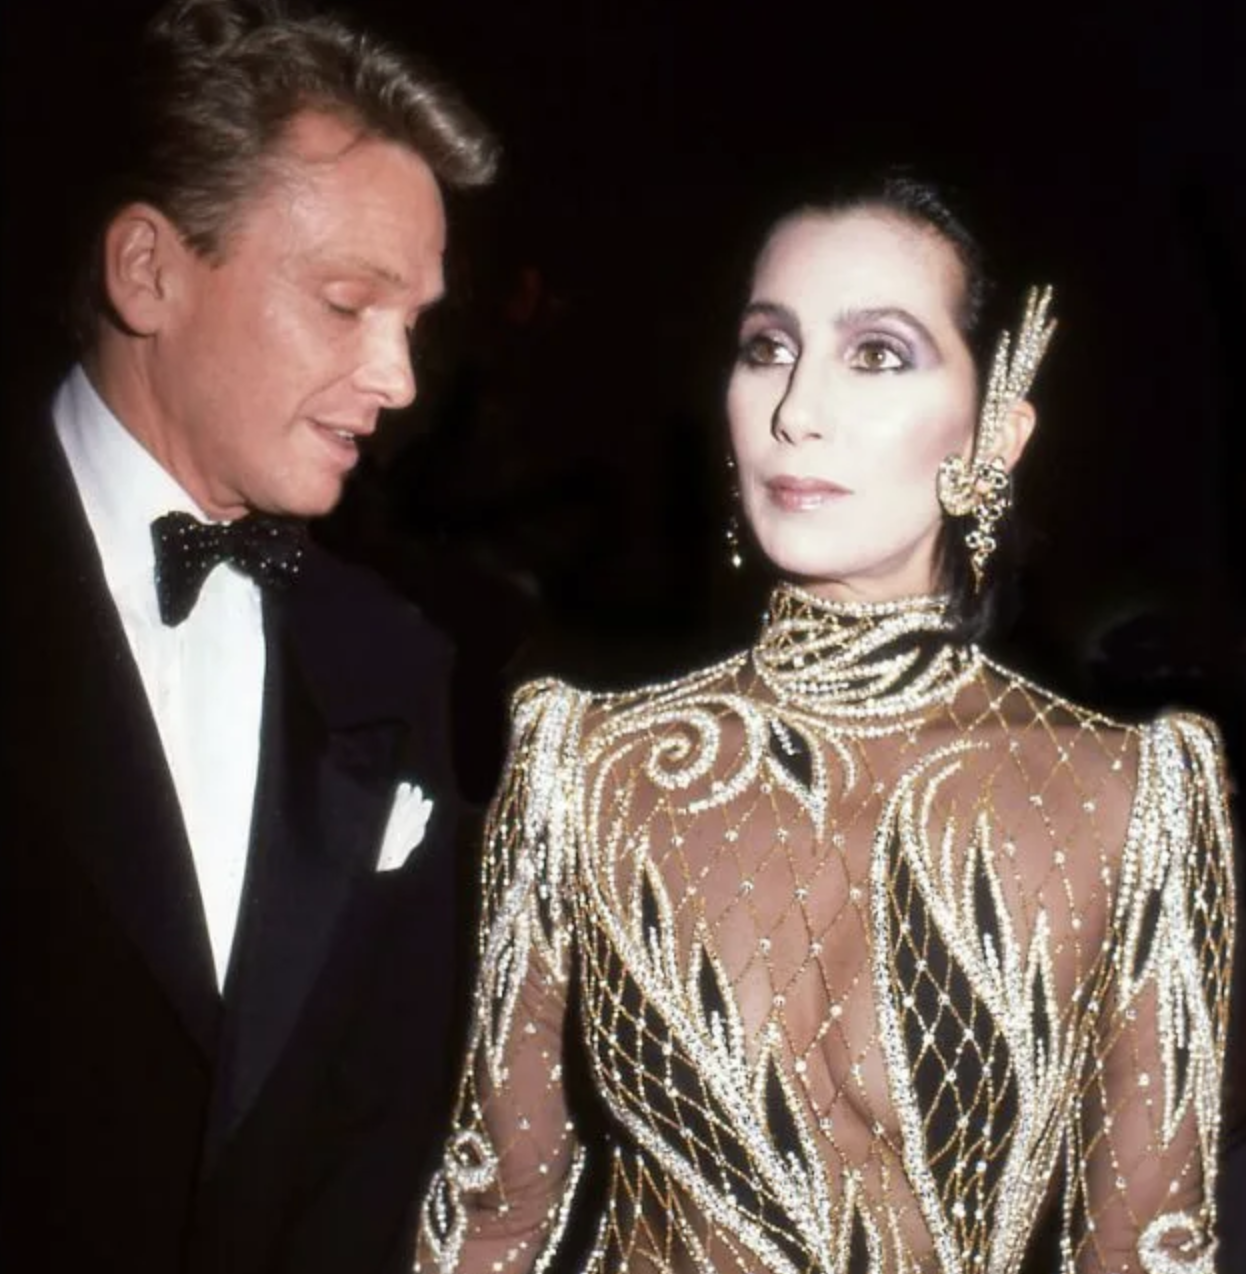 Cher con un vestido de malla y pedrería, acompañada por persona en traje formal